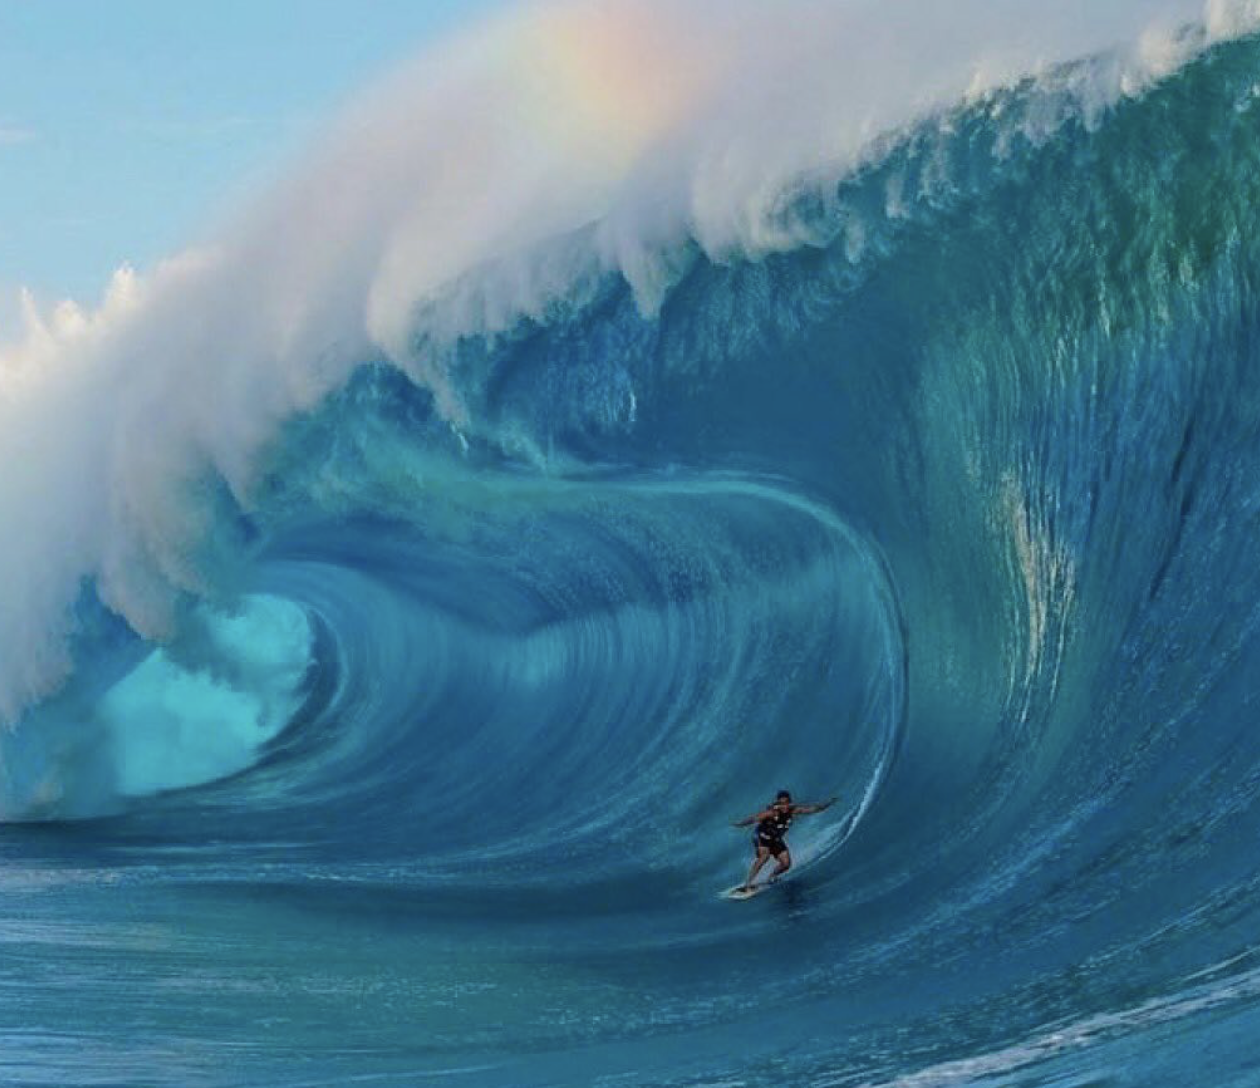 La gran ola surf